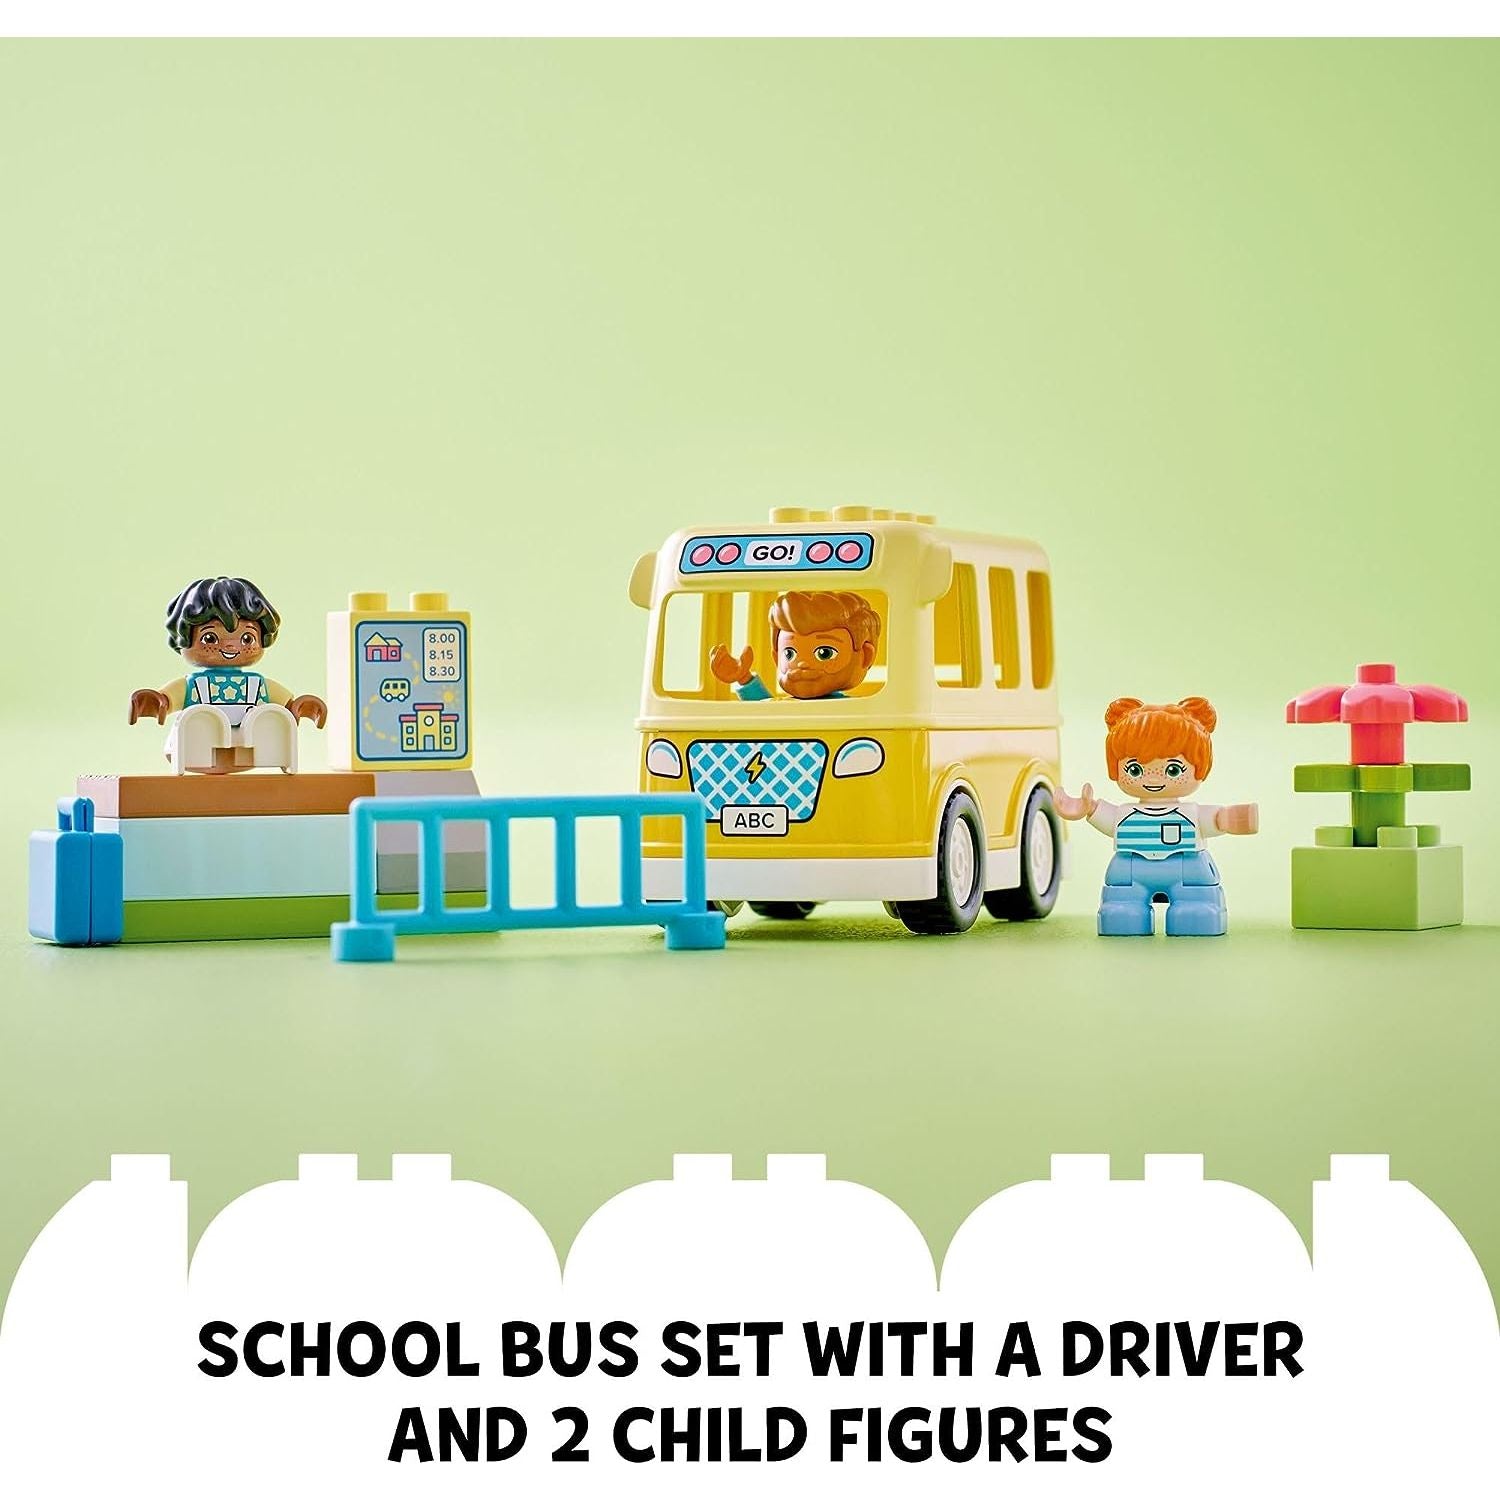 مجموعة ألعاب بناء العلوم والتكنولوجيا والهندسة والرياضيات من ليجو 10988 دوبلو تاون باص رايد للأطفال في مرحلة ما قبل المدرسة، تعلم كيفية ركوب الحافلة إلى الرعاية النهارية وتكوين الأصدقاء